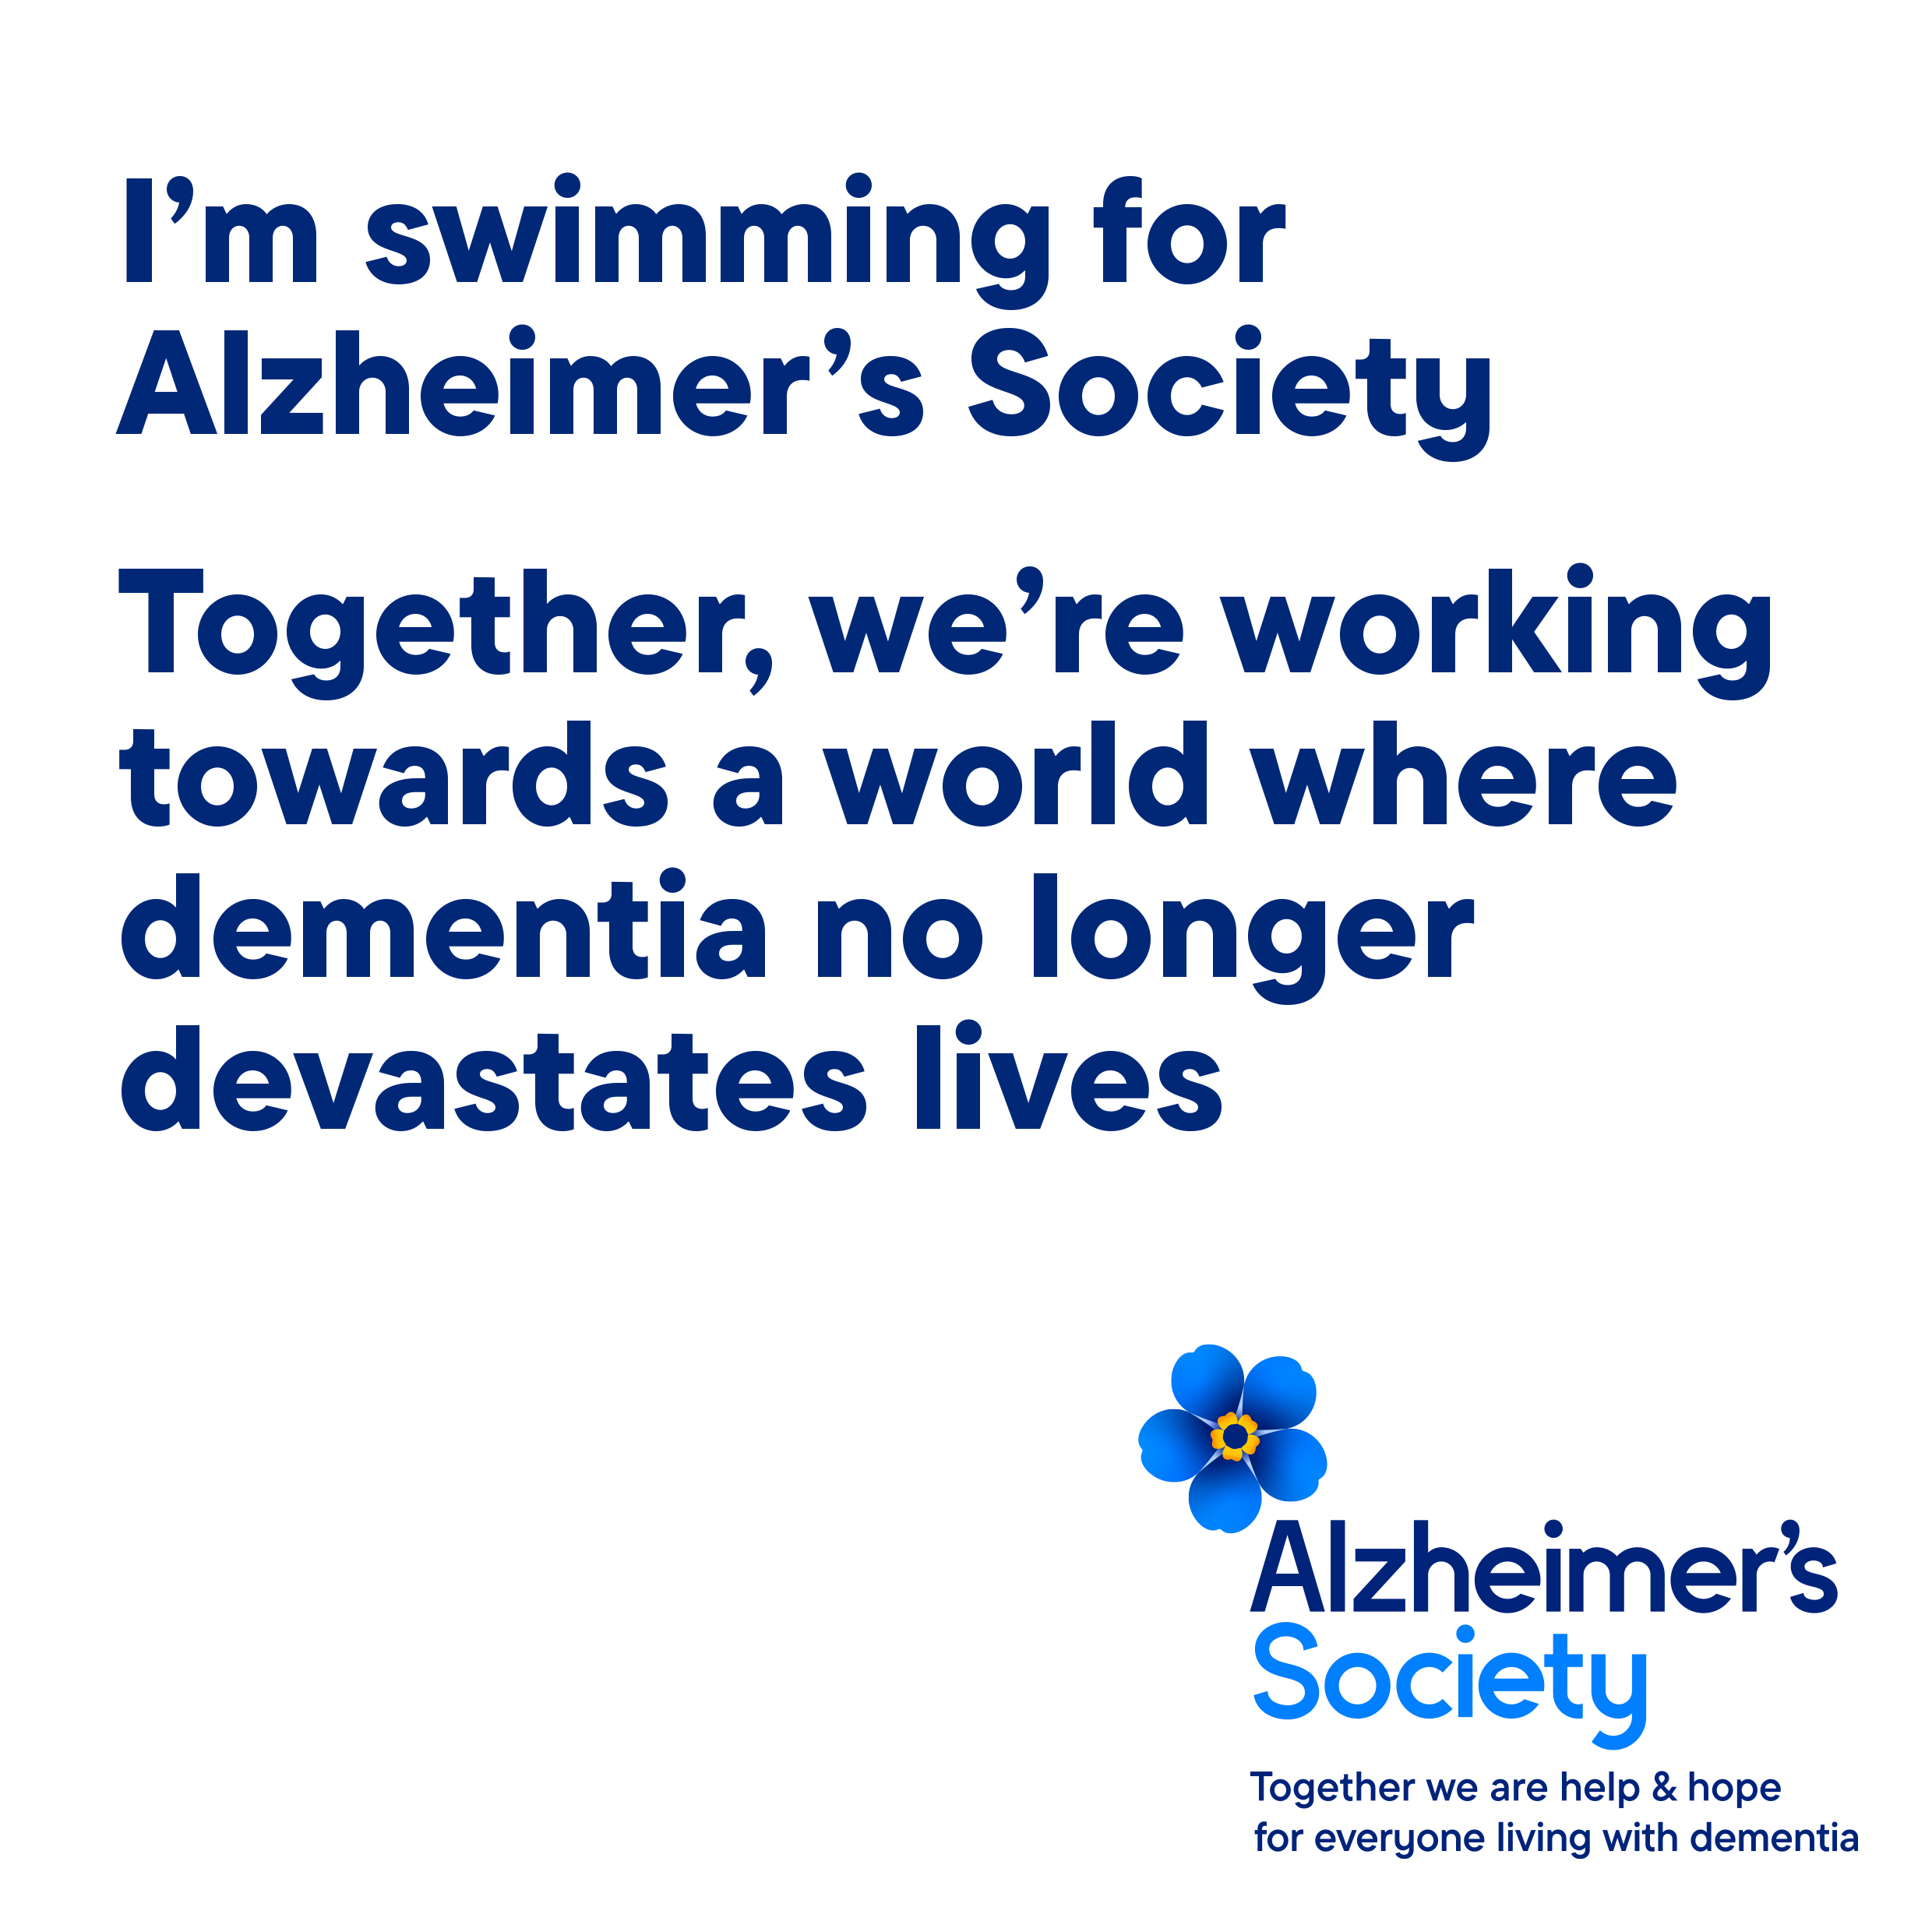 I'm swimming for Alzheimer's Society banner